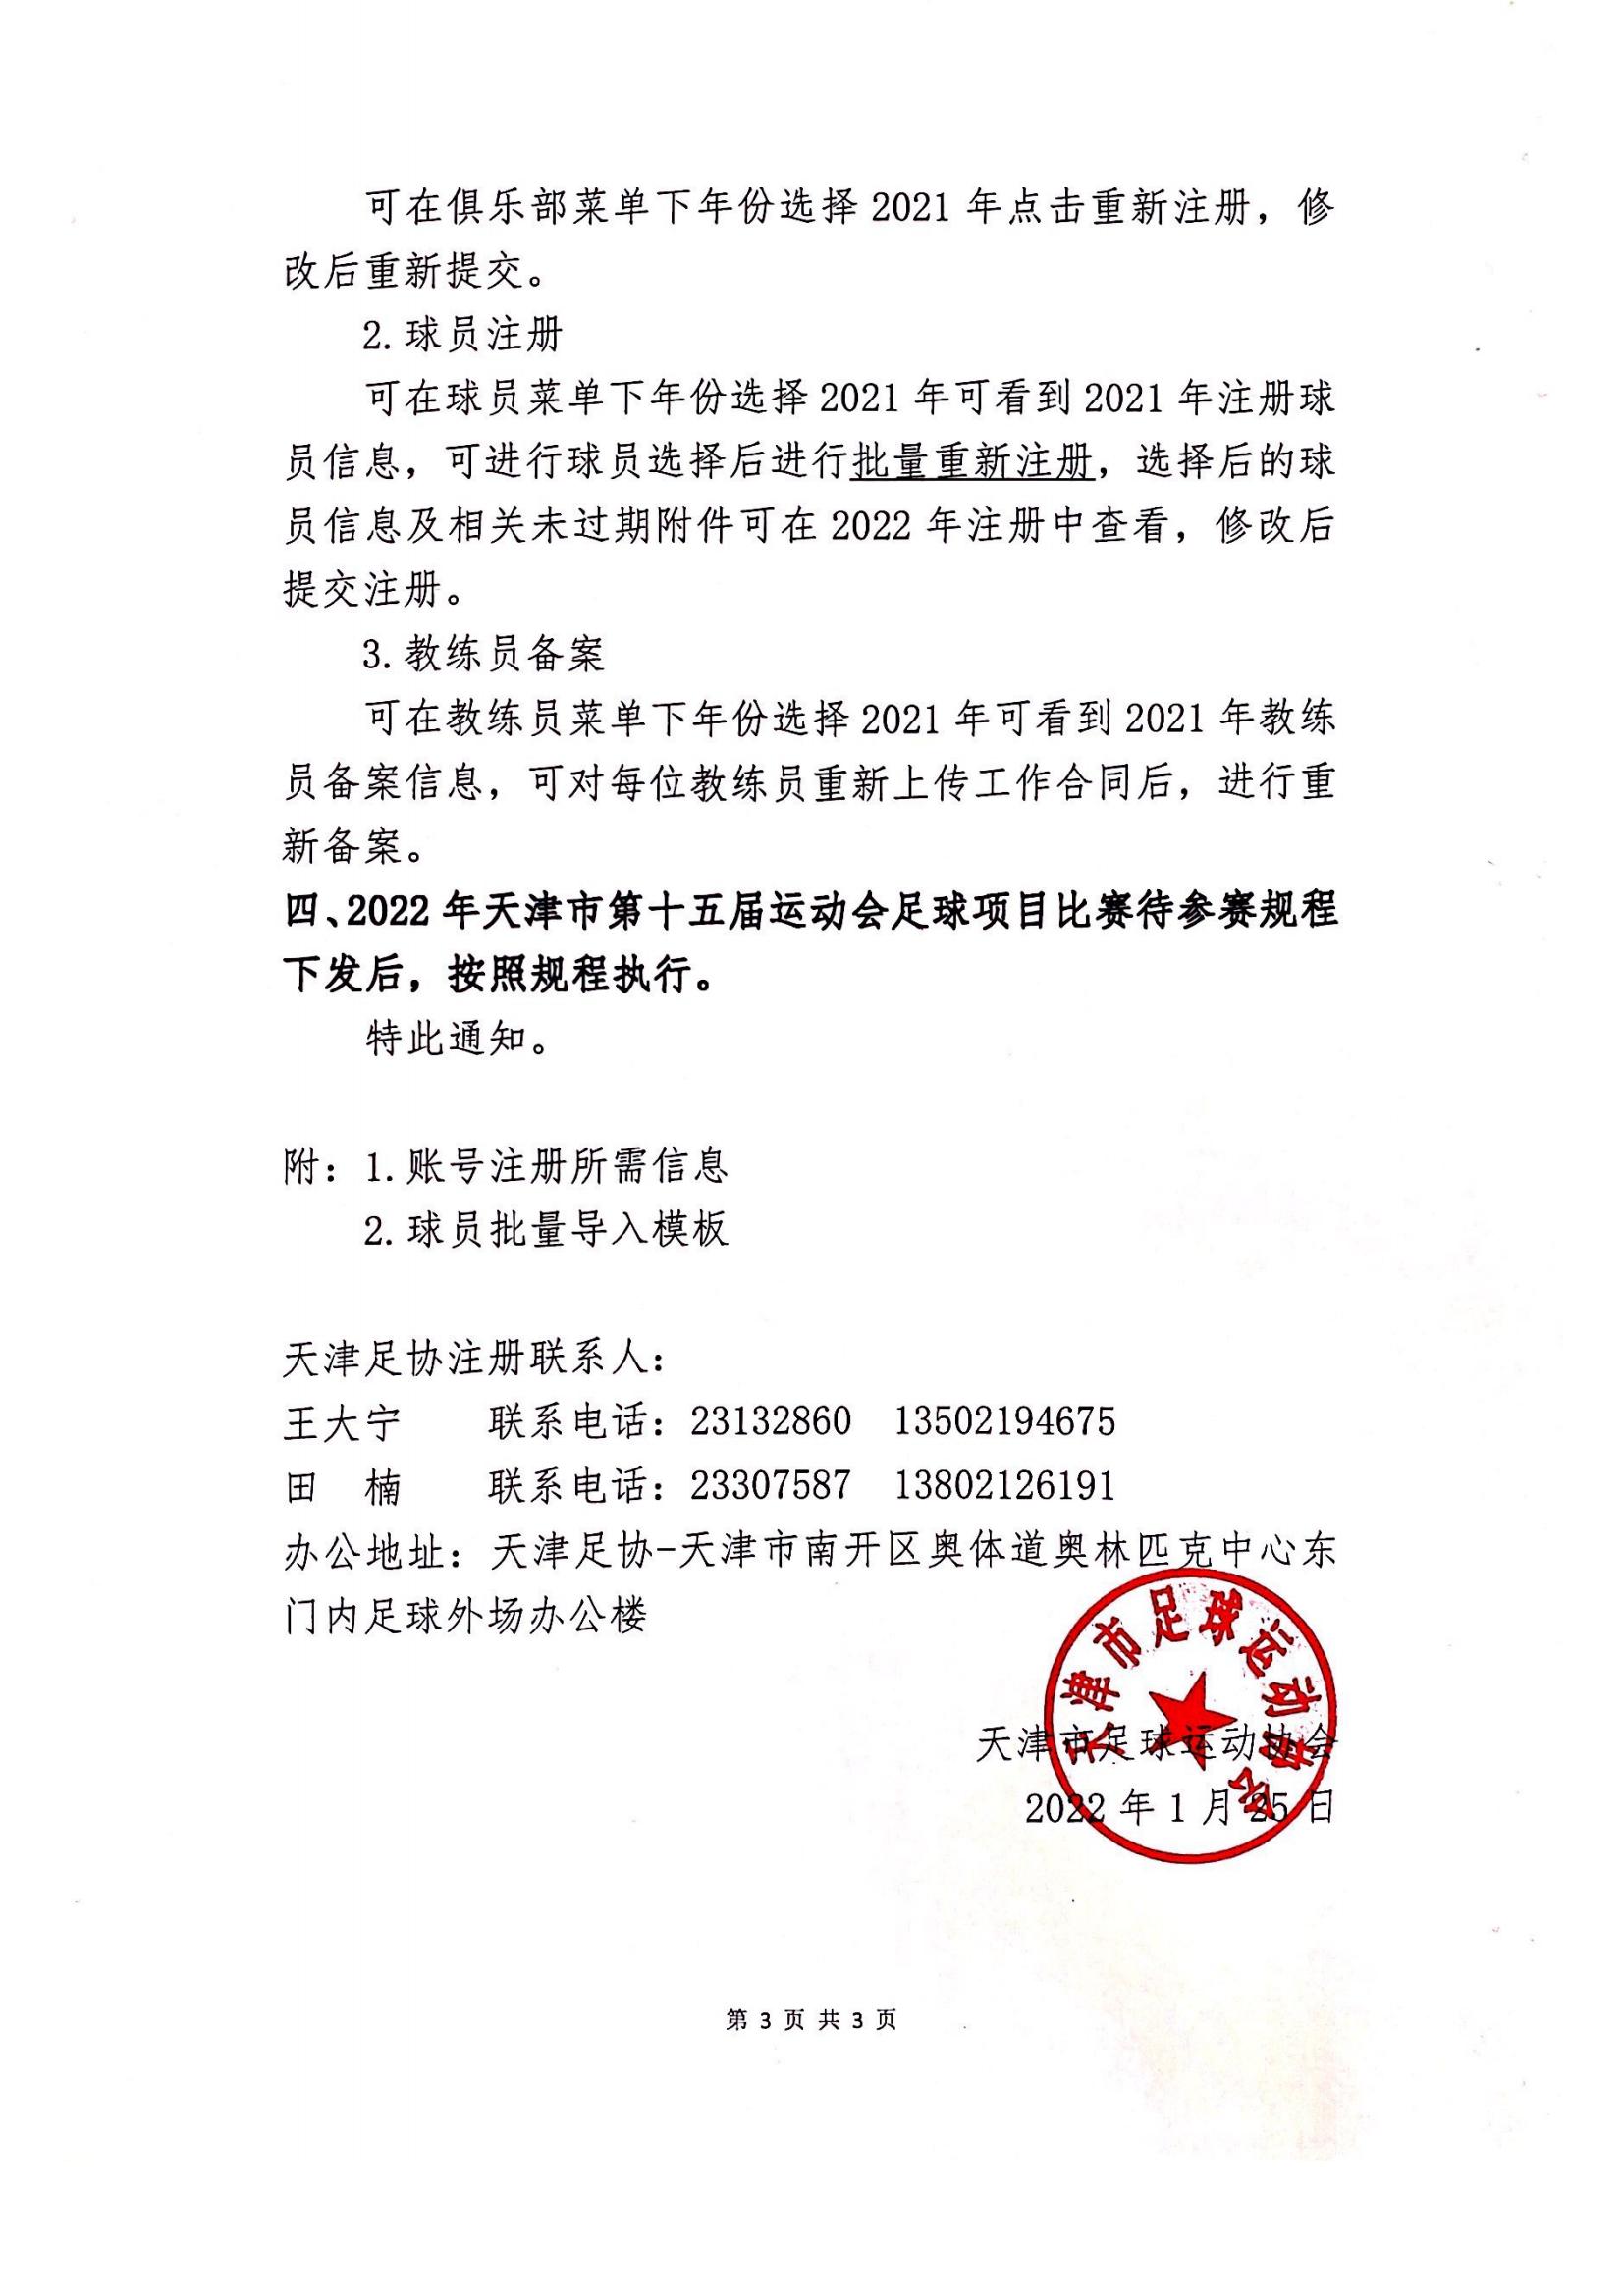 关于2022年度天津市各足球组织的青训机构、俱乐部、学校运动员、教练员在中国足协信息化平台注册备案的通知